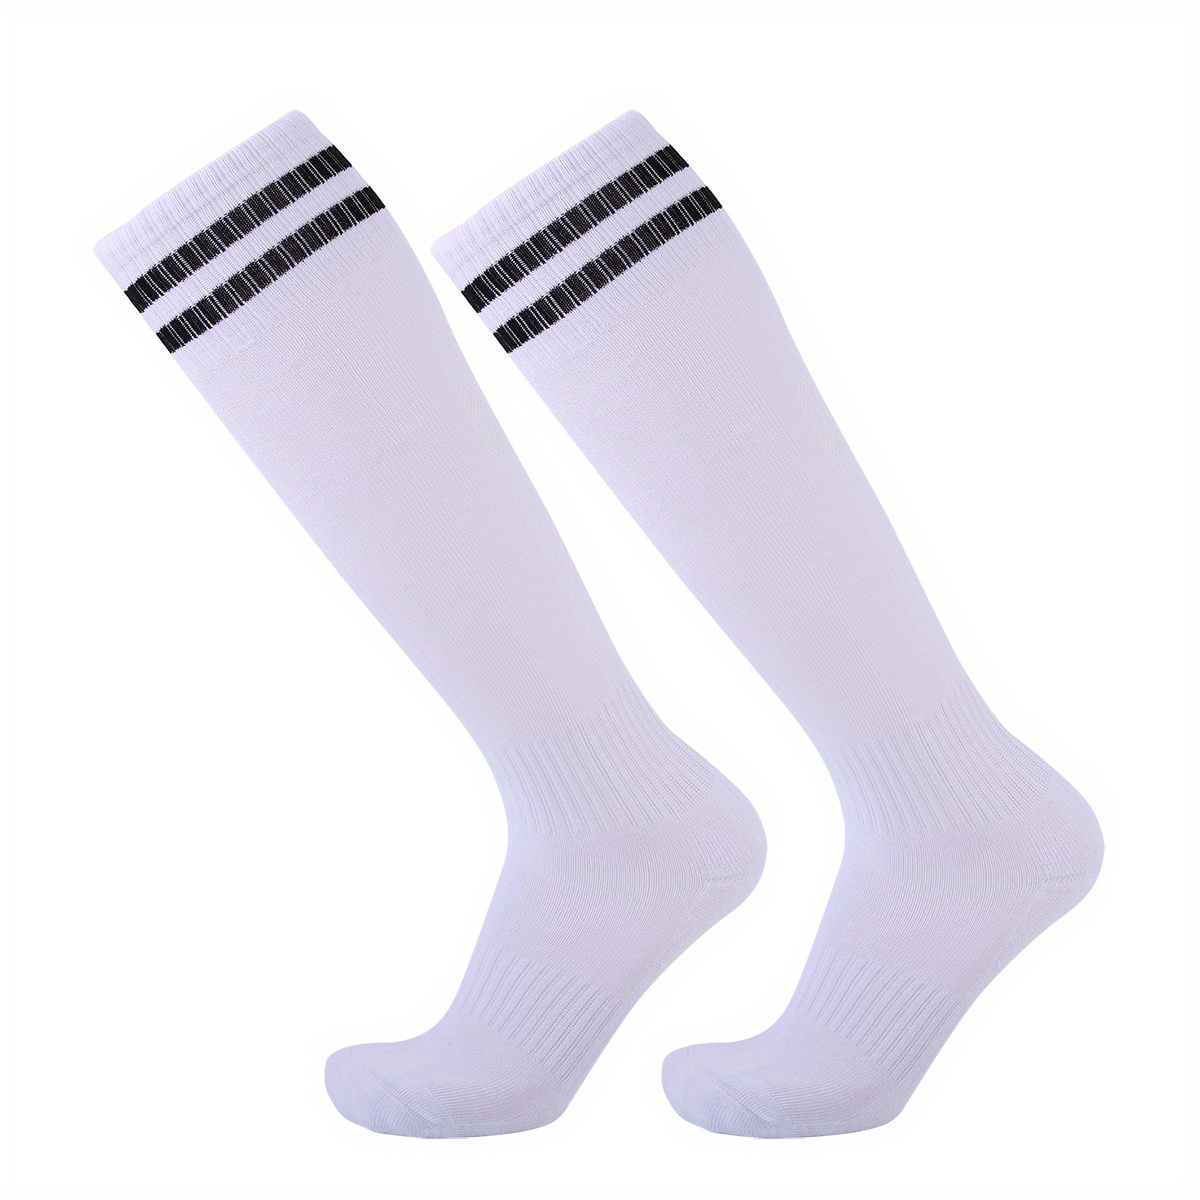 2pairs Unisex Over The Calf Athletic Socks For Soccer Football Non Slip ...